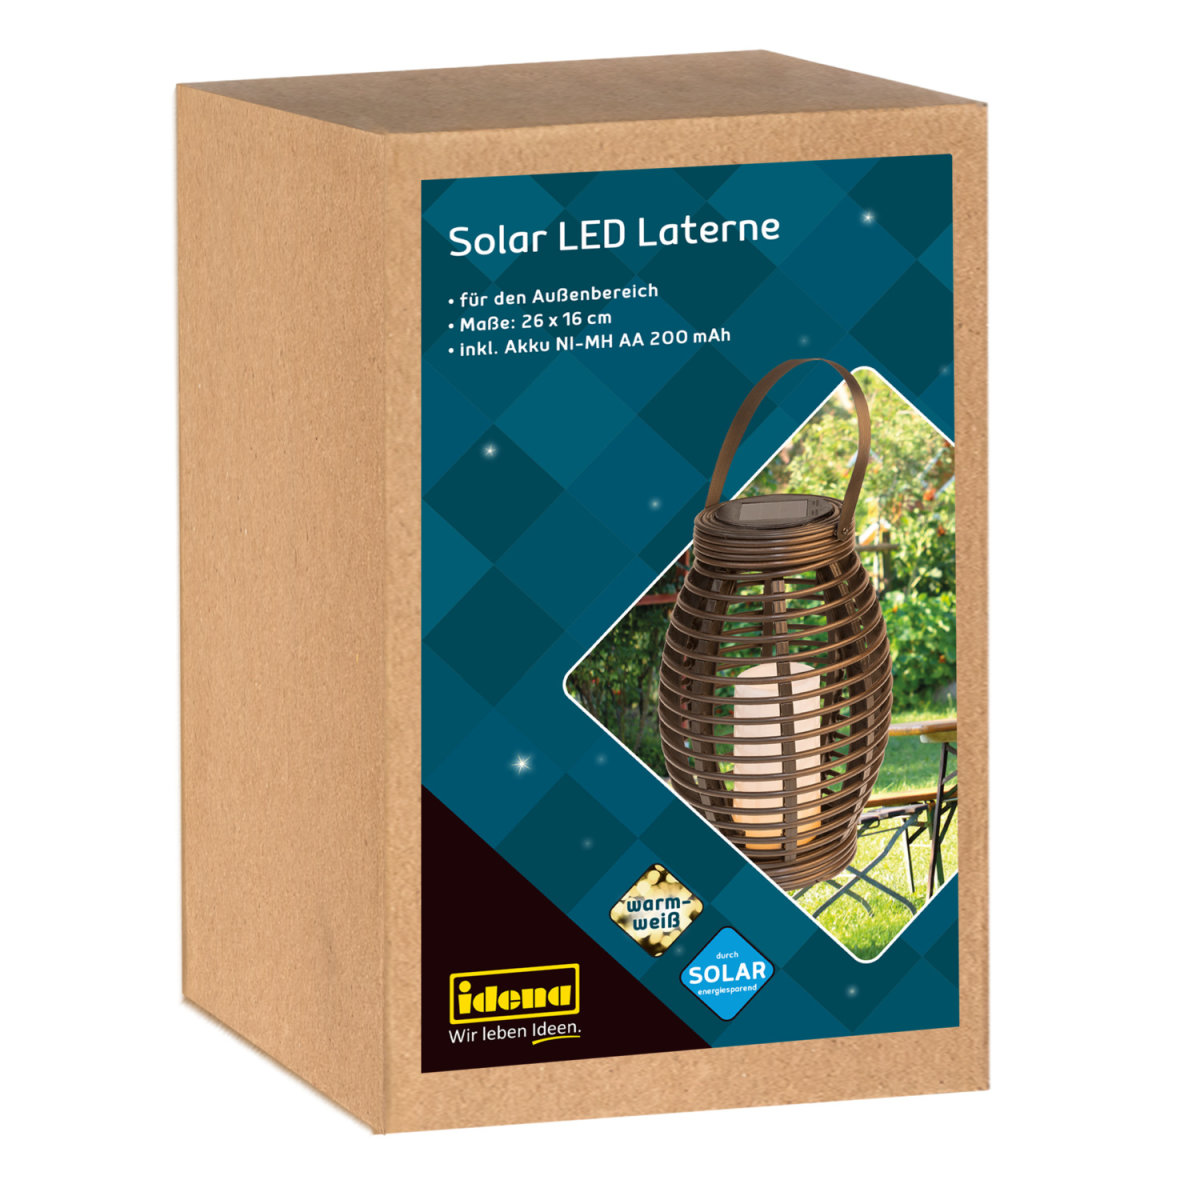 Idena - Solar LED Laterne jetzt online kaufen » Zum Shop